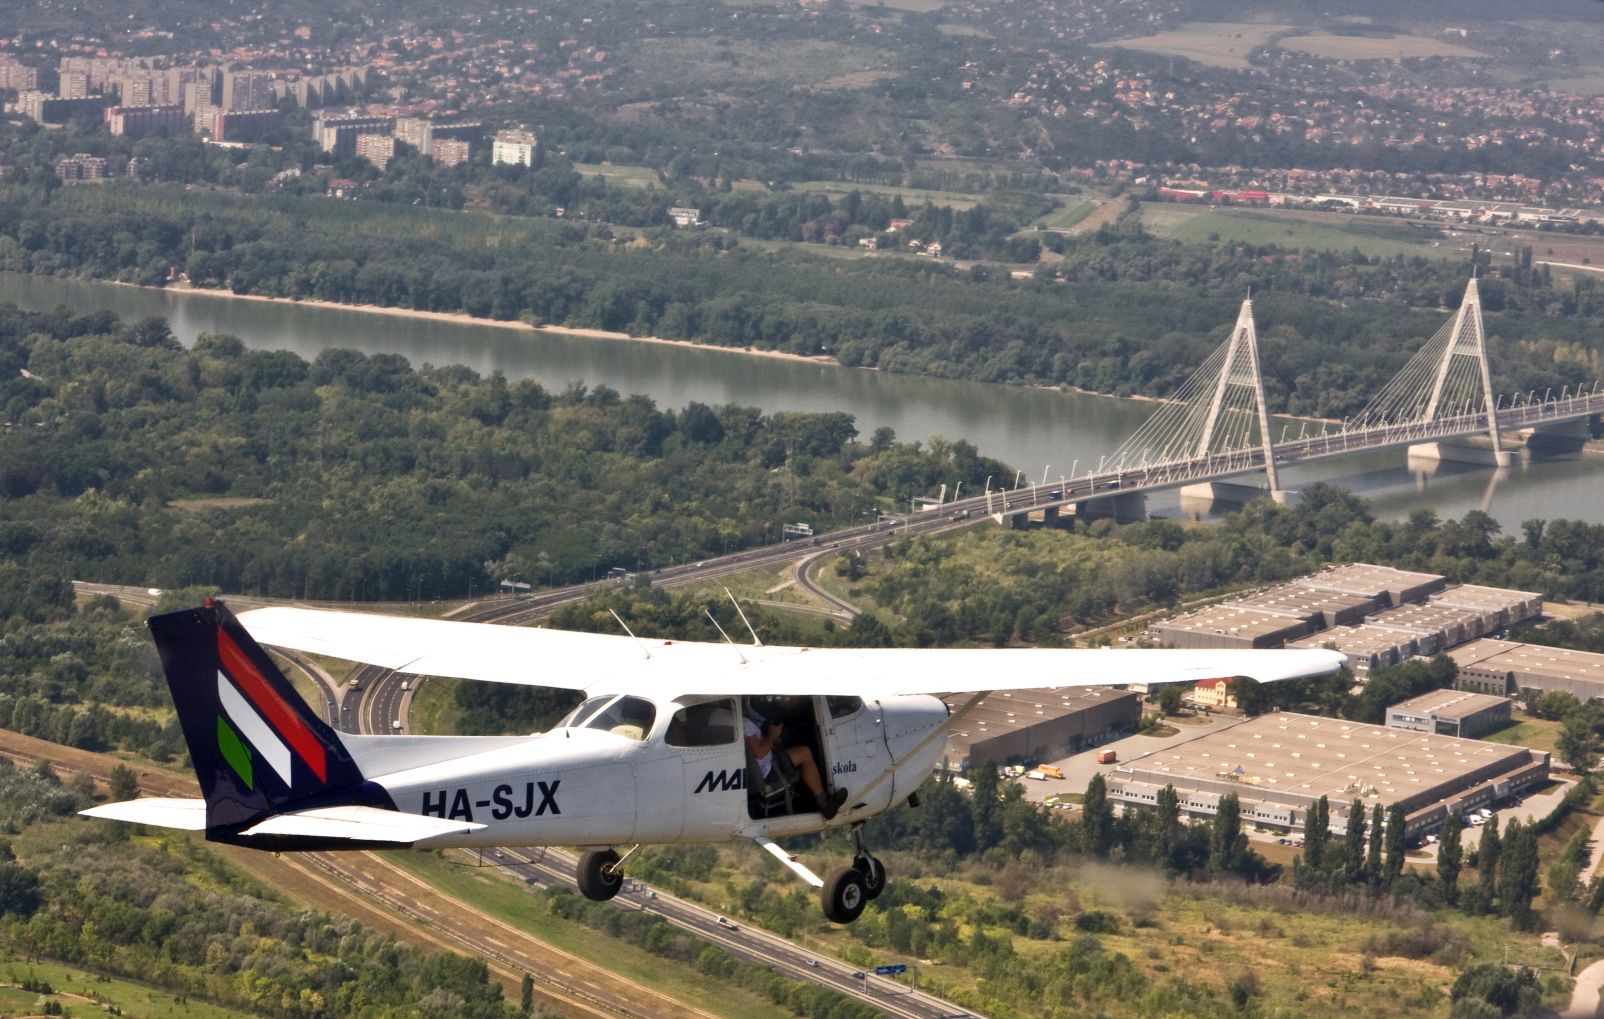 A repülőklub egyik Cessnája, amelyet szintén dobra vertek, mert a Malév nevén volt <br>(fotó: Vörös Attila)